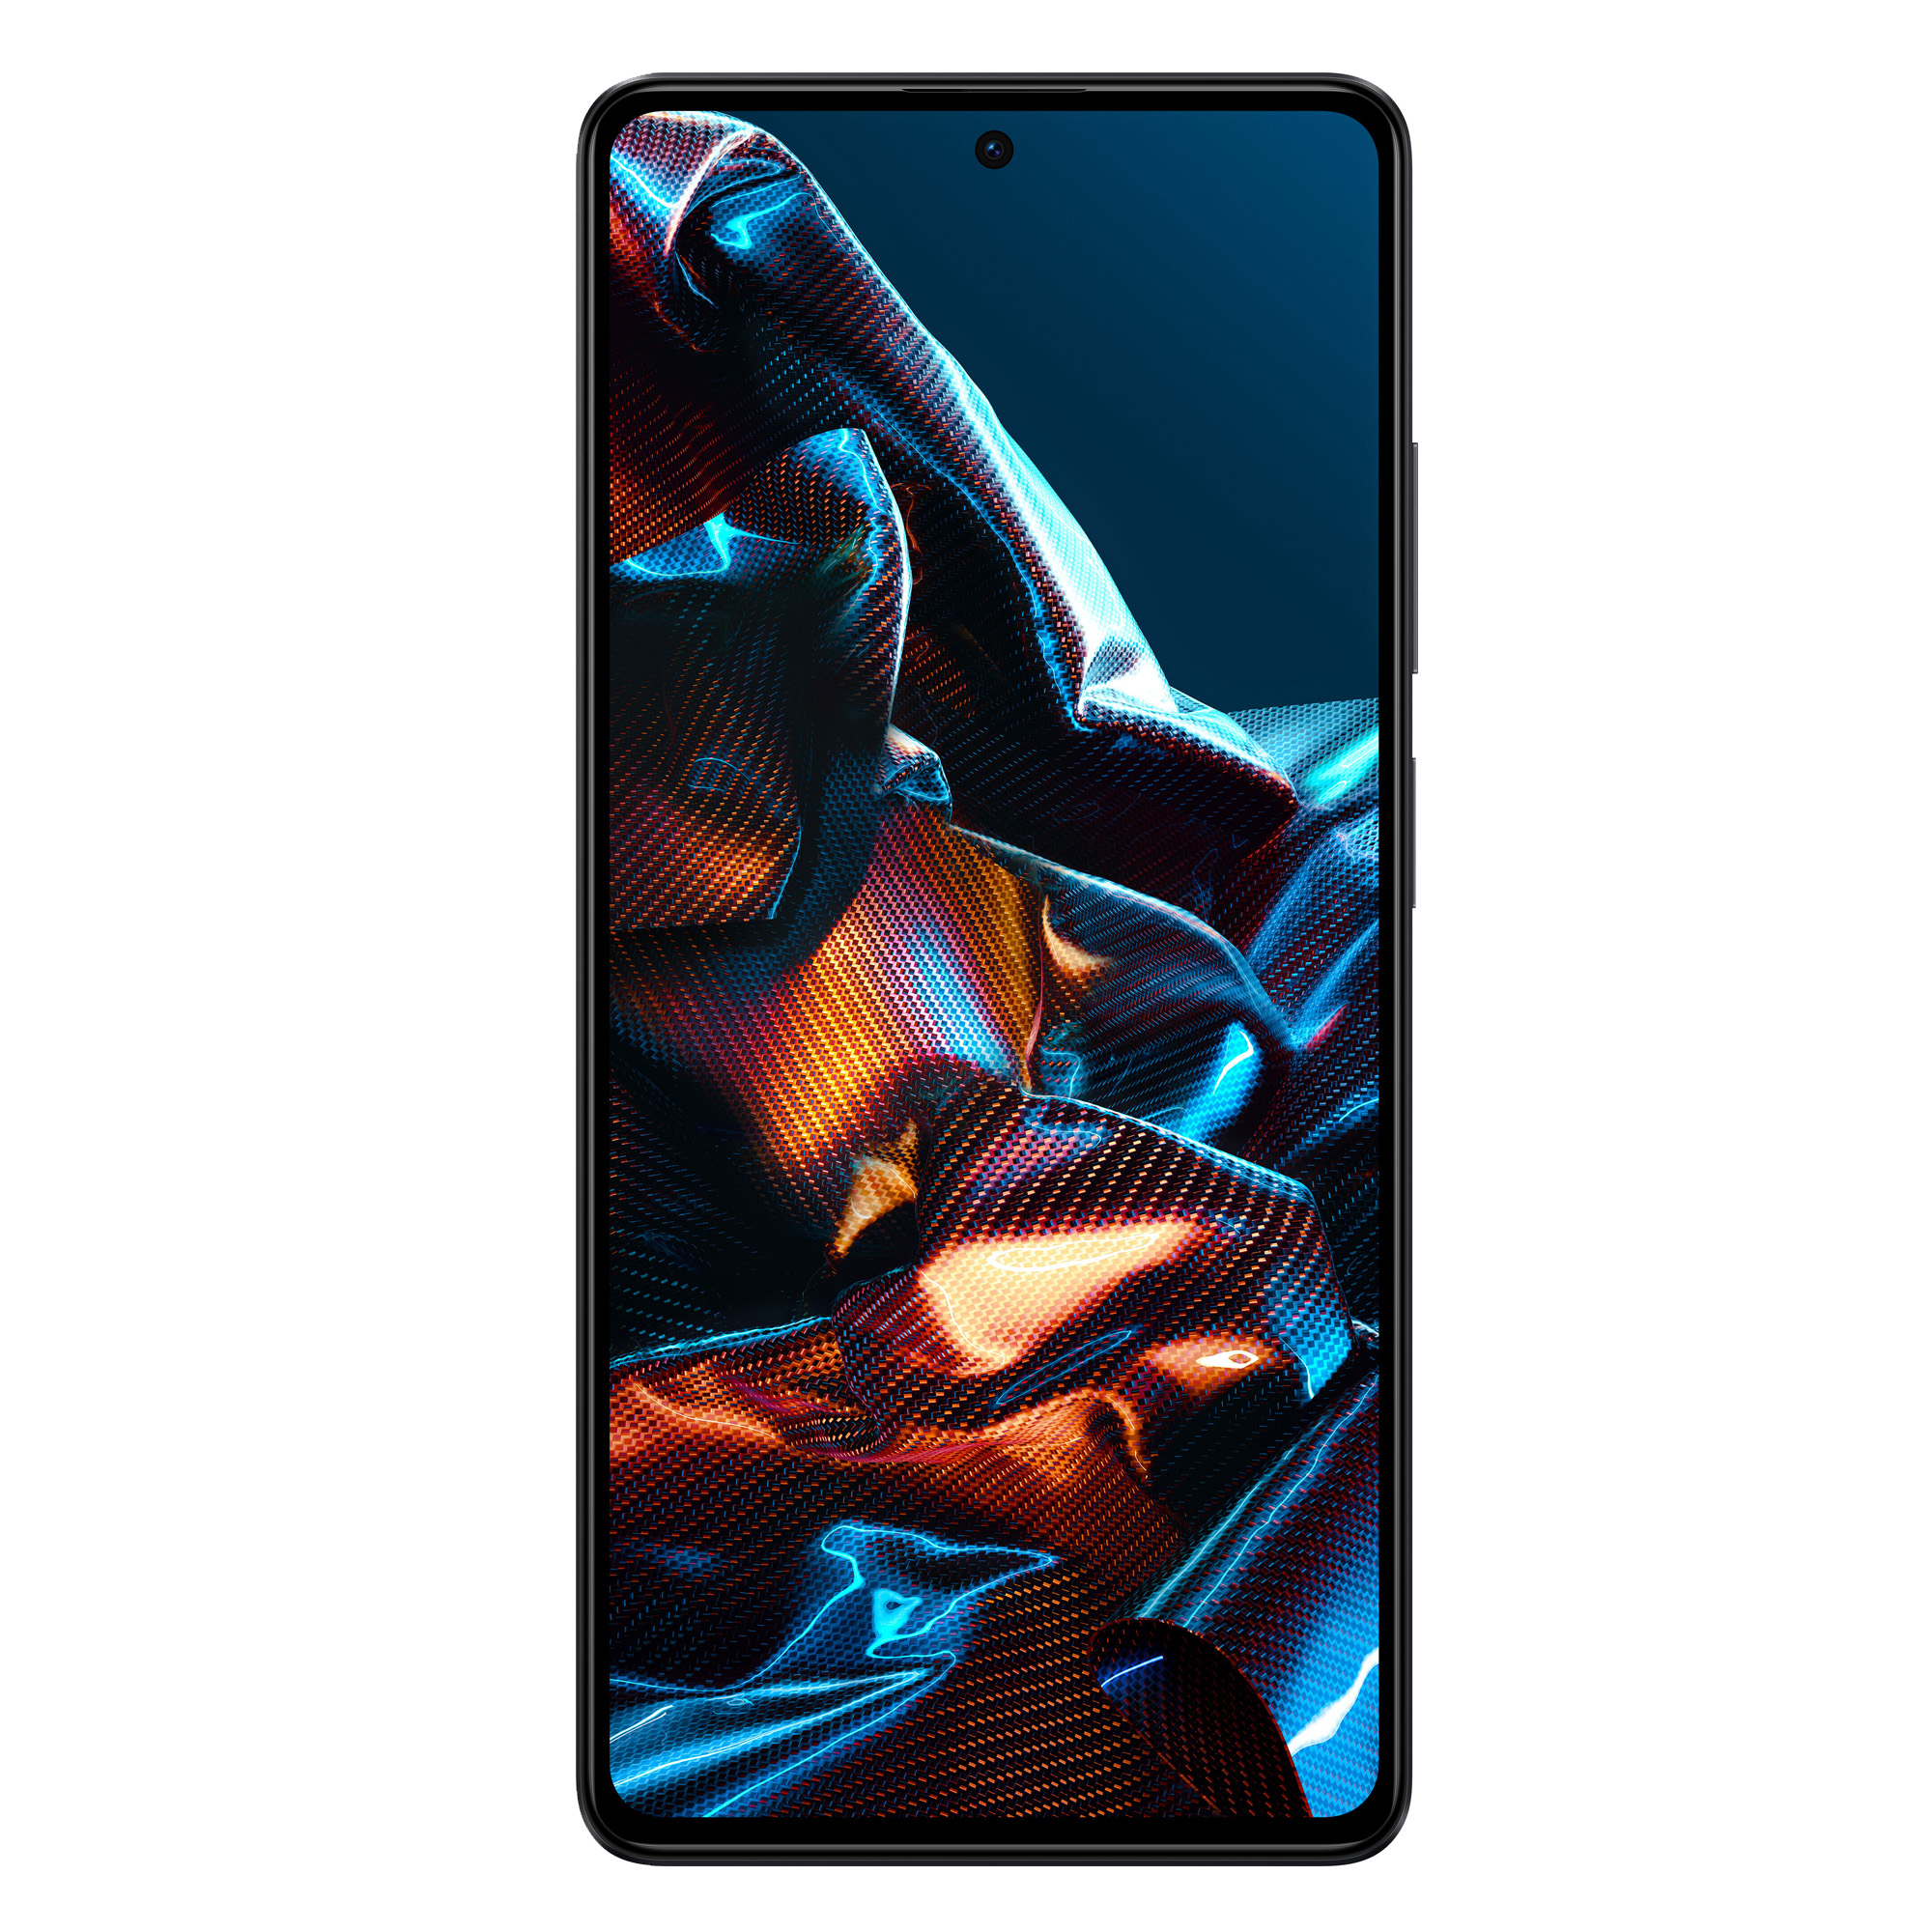 Mobitel-Xiaomi-POCO-X5-PRO-5G-Black